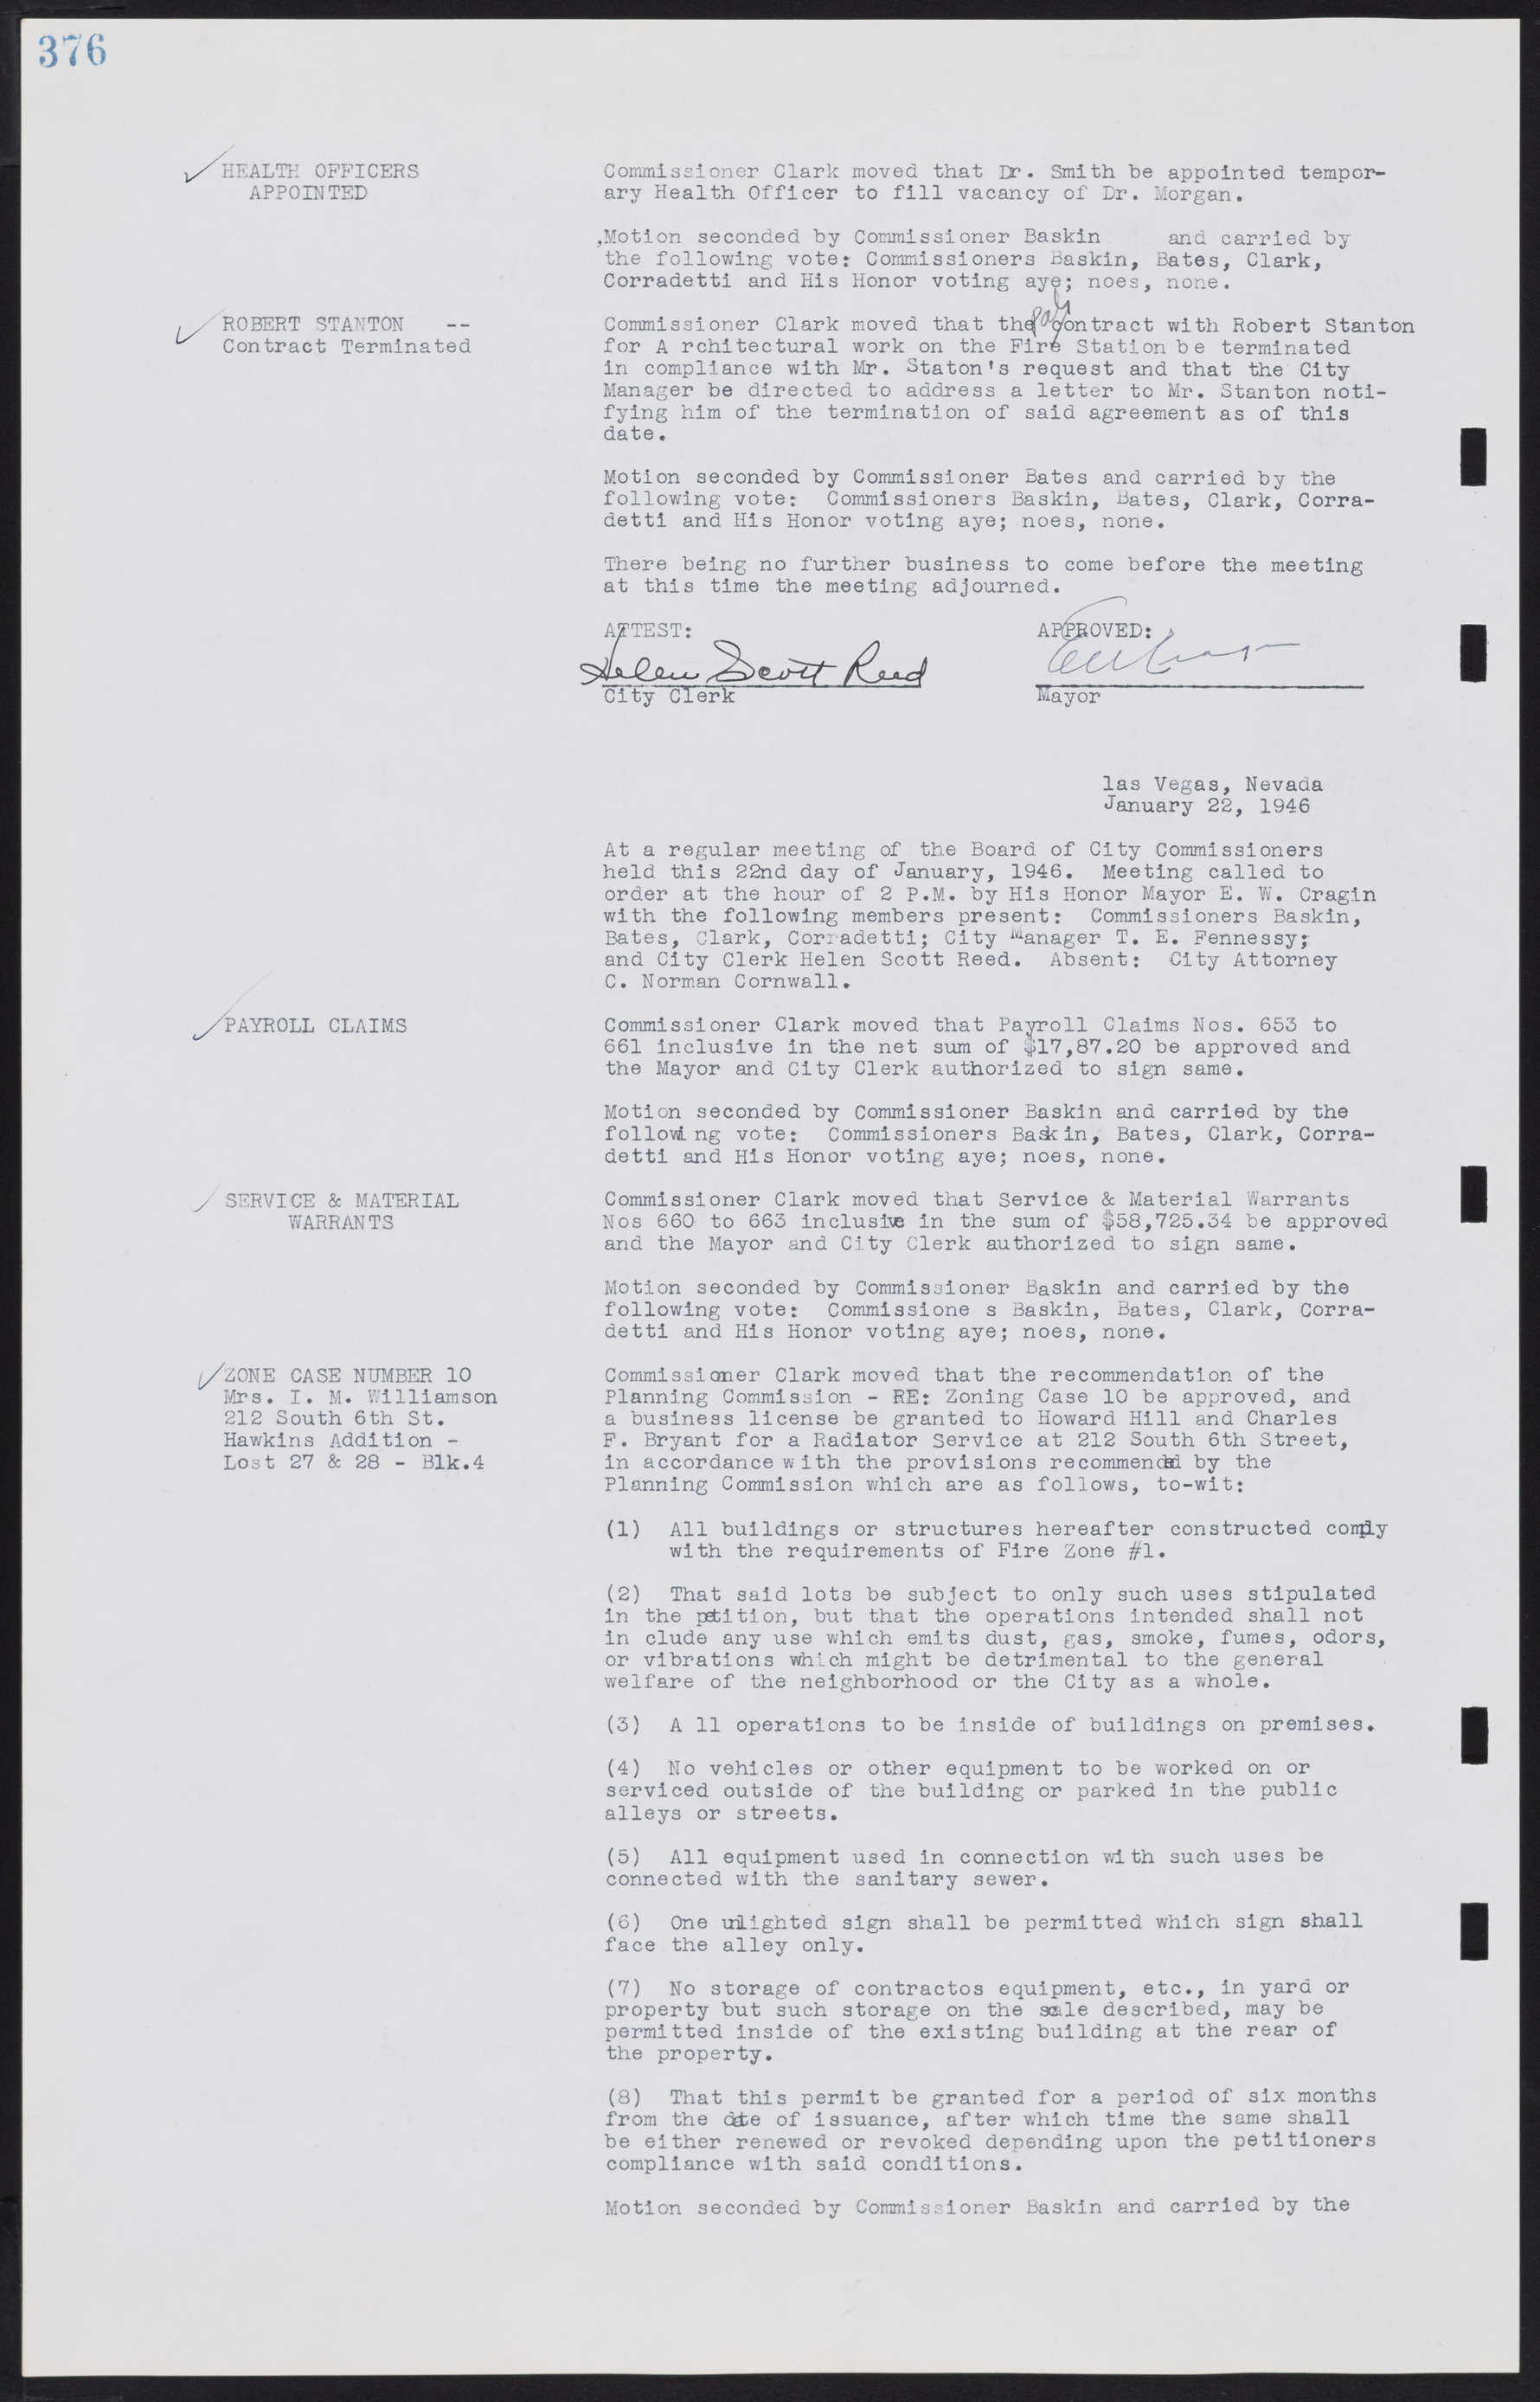 Las Vegas City Commission Minutes, August 11, 1942 to December 30, 1946, lvc000005-403